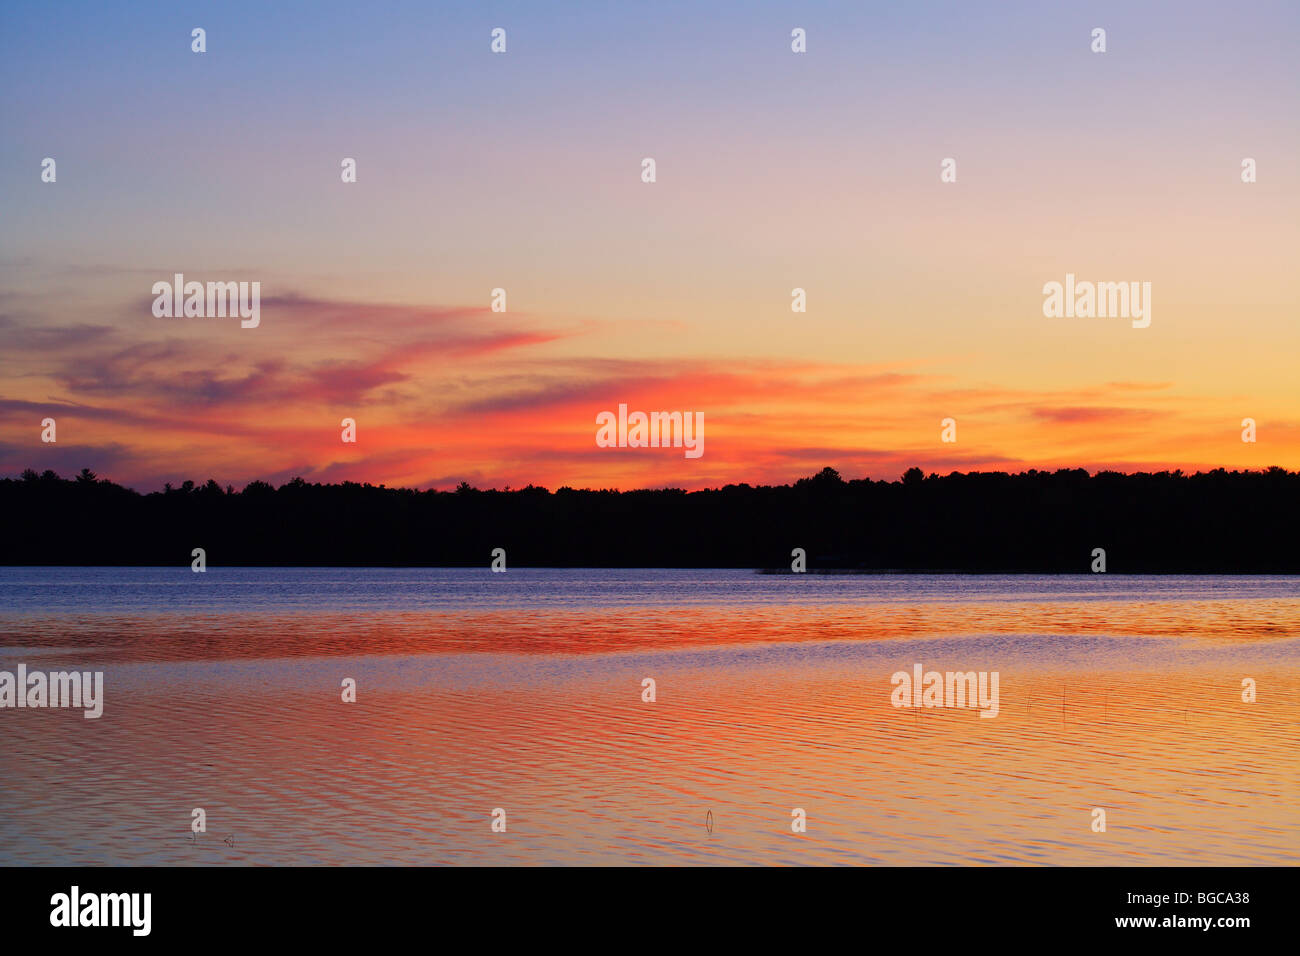 sunset on lake in minnesota summer Stock Photo